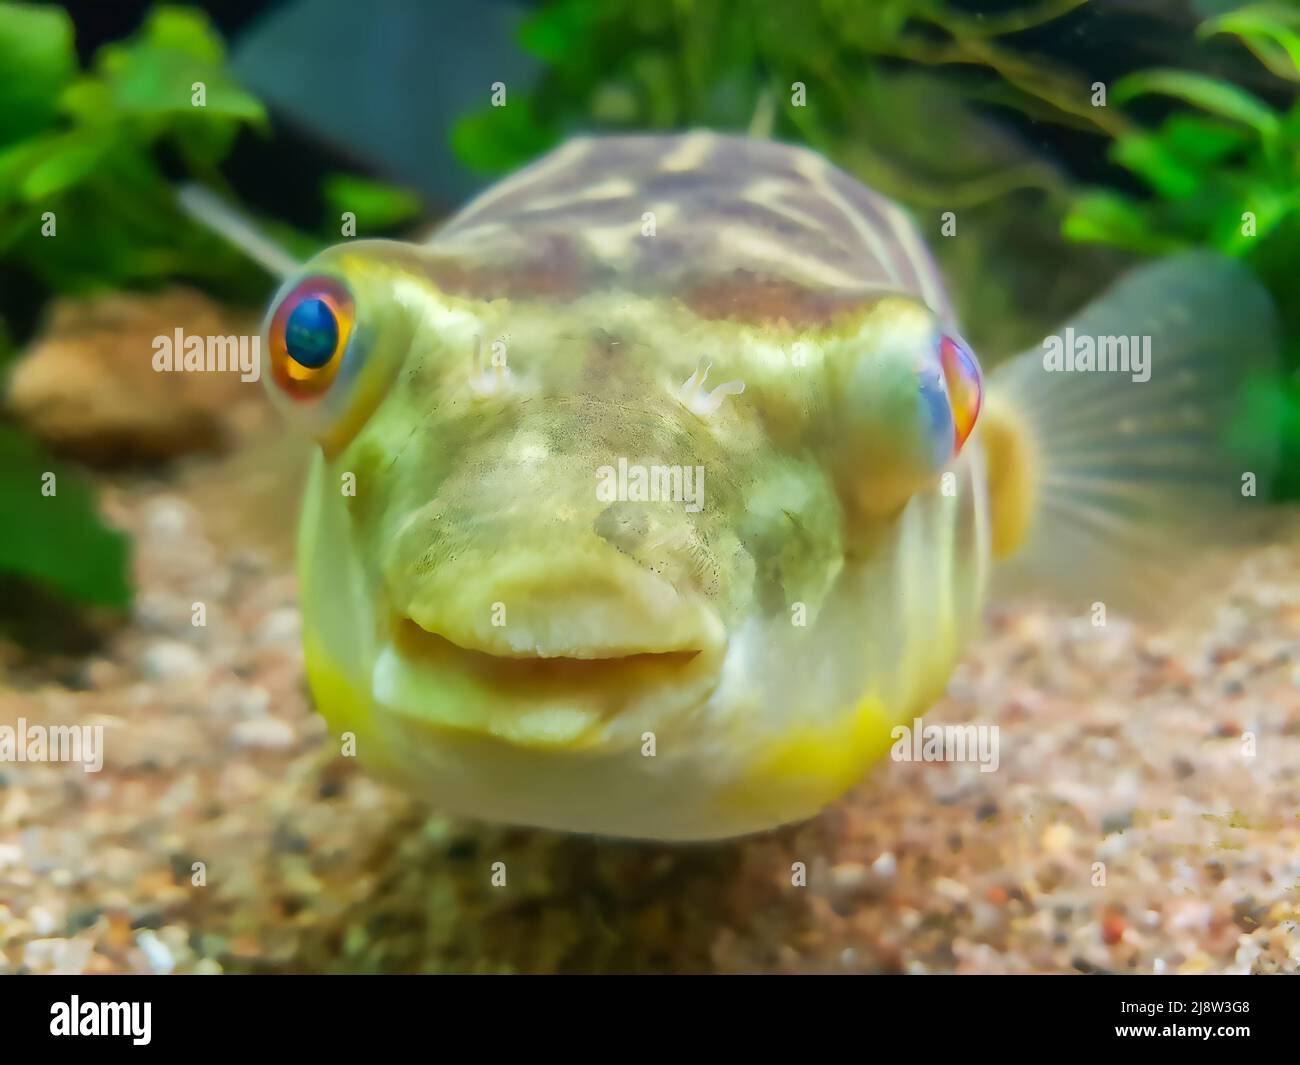 Exotic funny aquarium fish Stock Photo